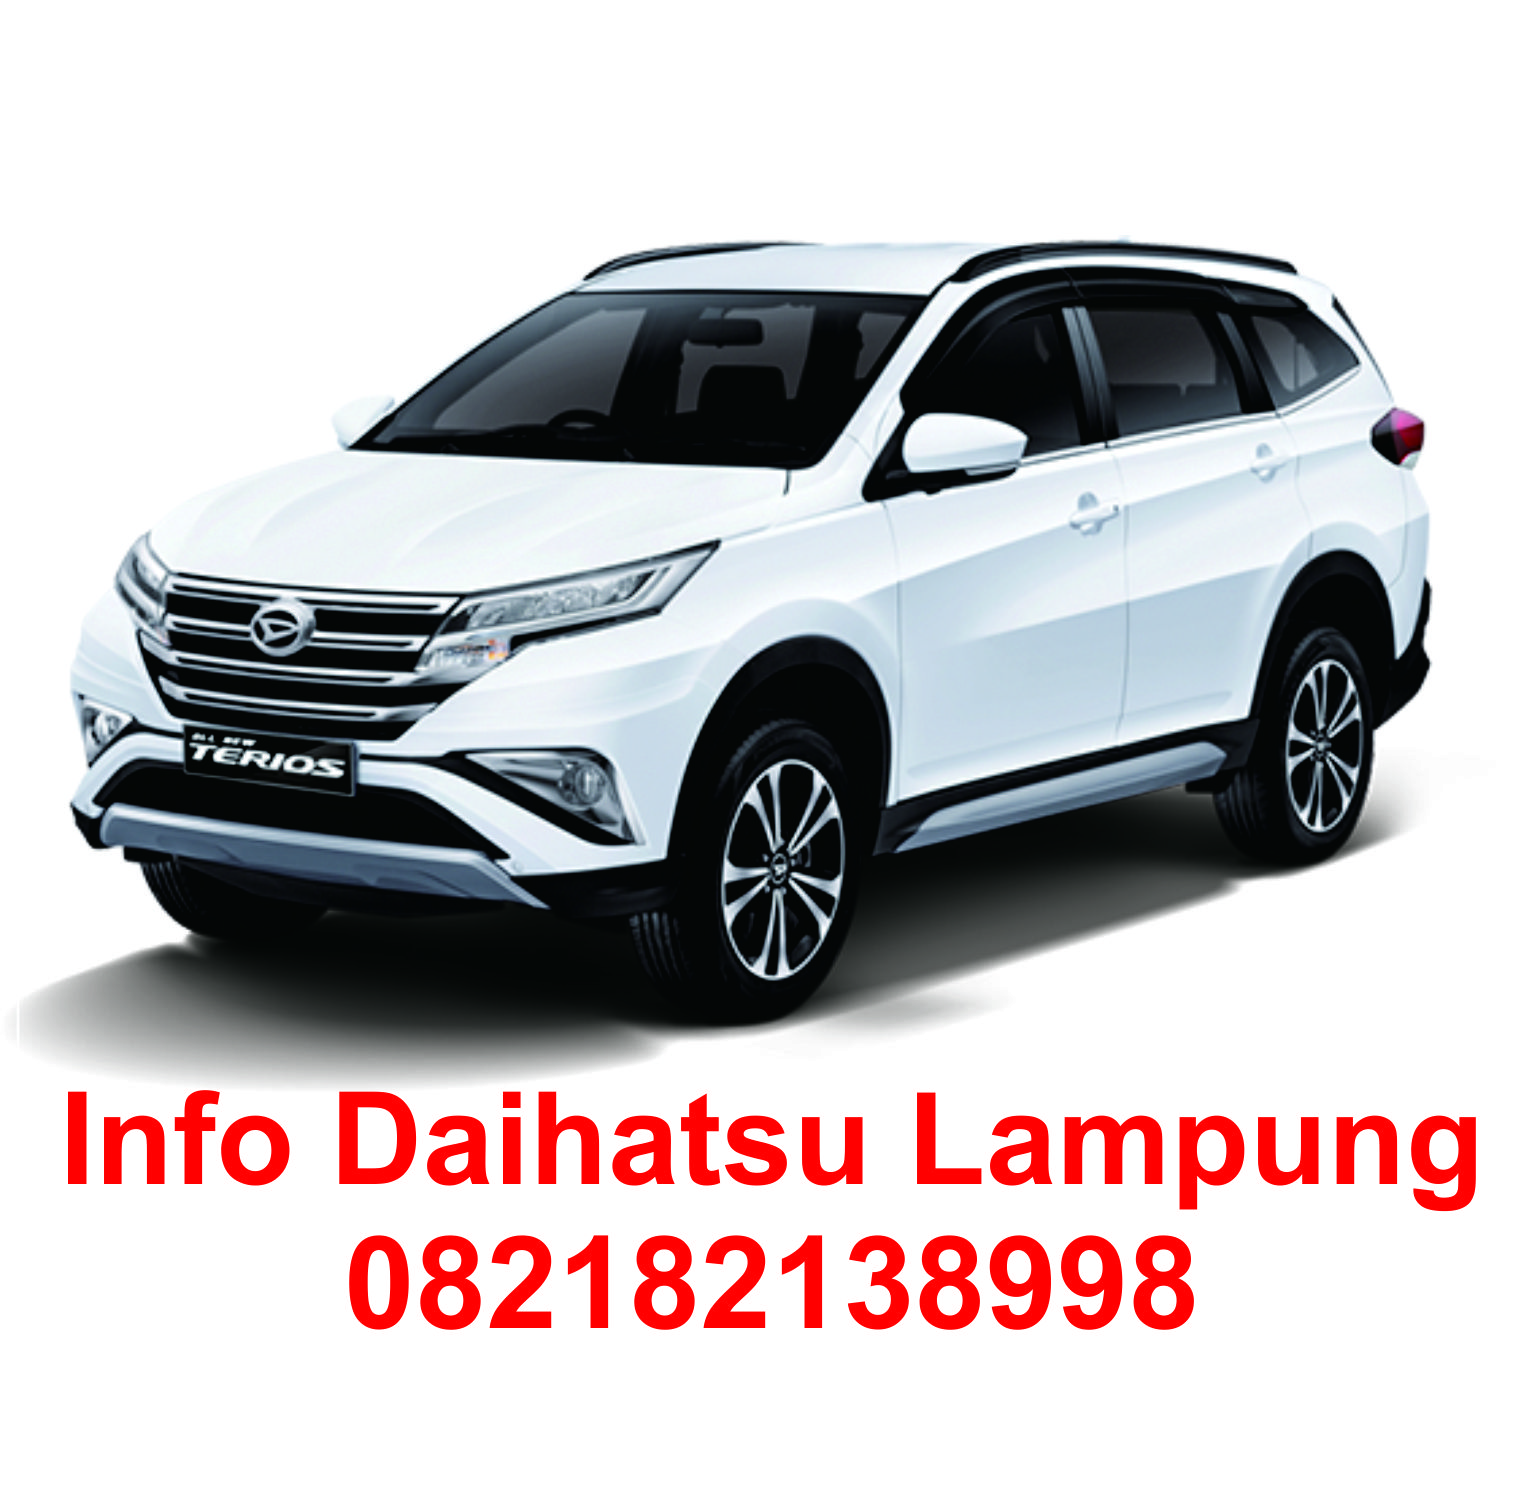 Sales Wuling Lampung Sales Daihatsu Lampung 082182138998 Erwan Firdaus